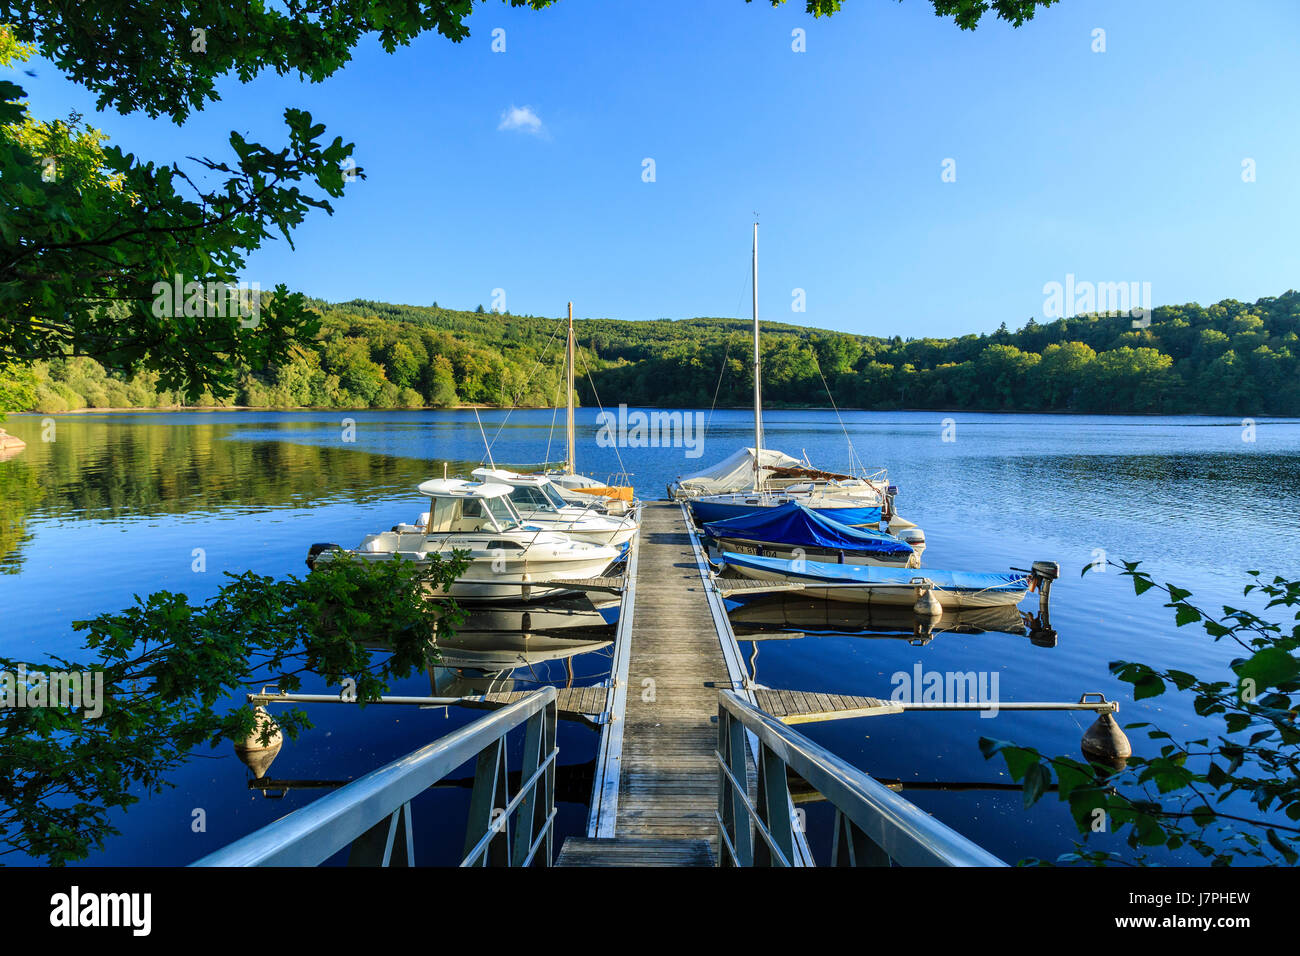 France, Creuse, Vassiviere lake, Royere de Vassiviere,  Broussas harbour Stock Photo